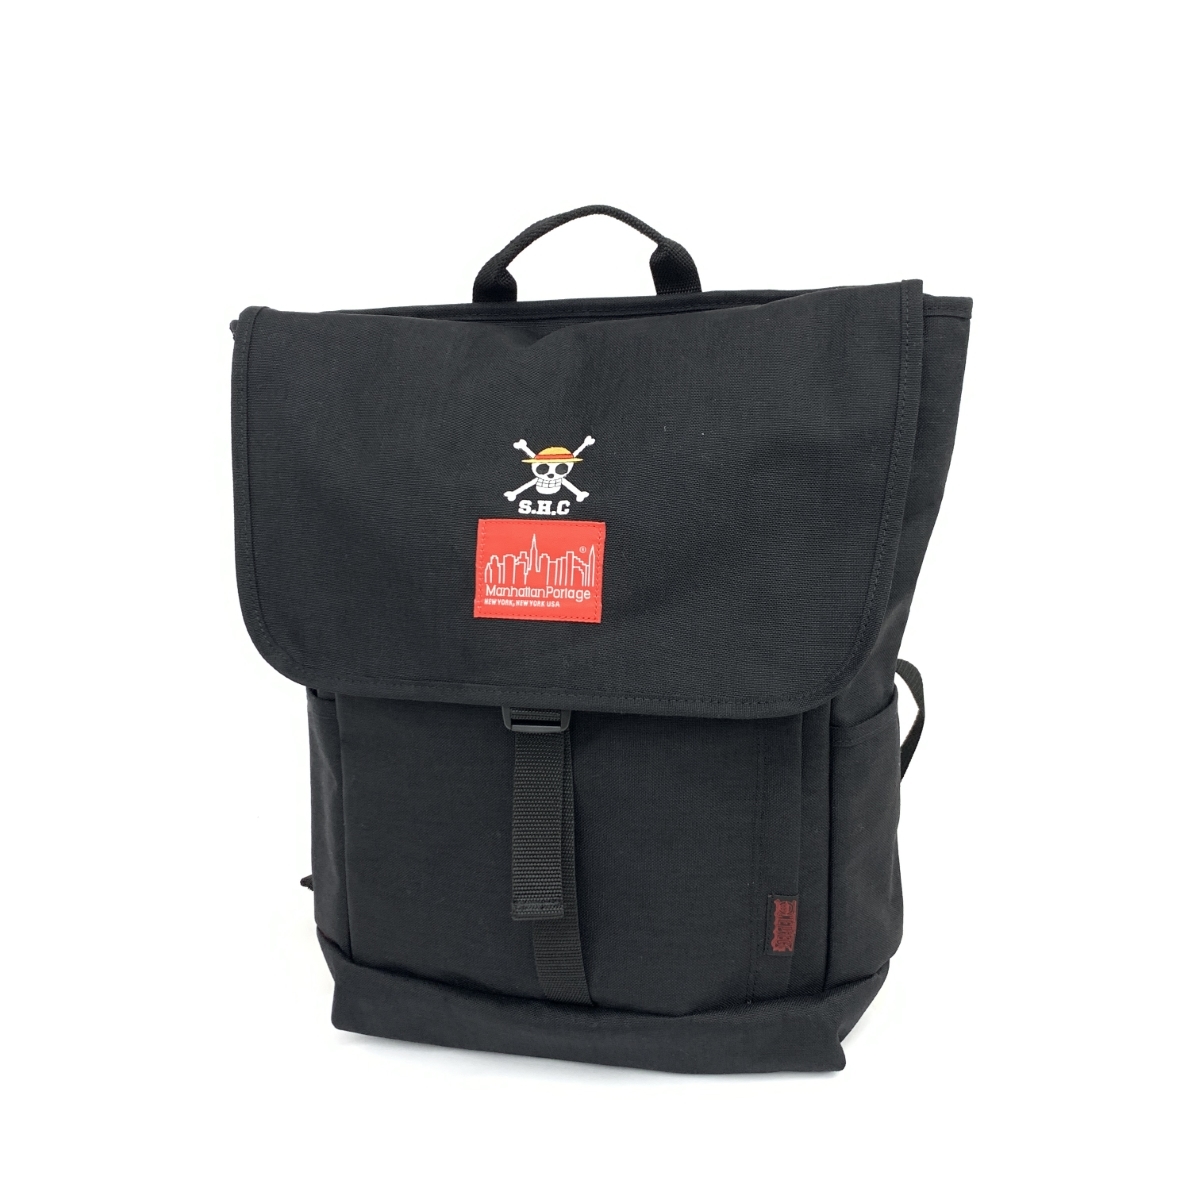 良好◆manhattan Portage マンハッタンポーテージ リュックサック◆ ブラック ナイロン ユニセックス ワンピース バックパック bag 鞄